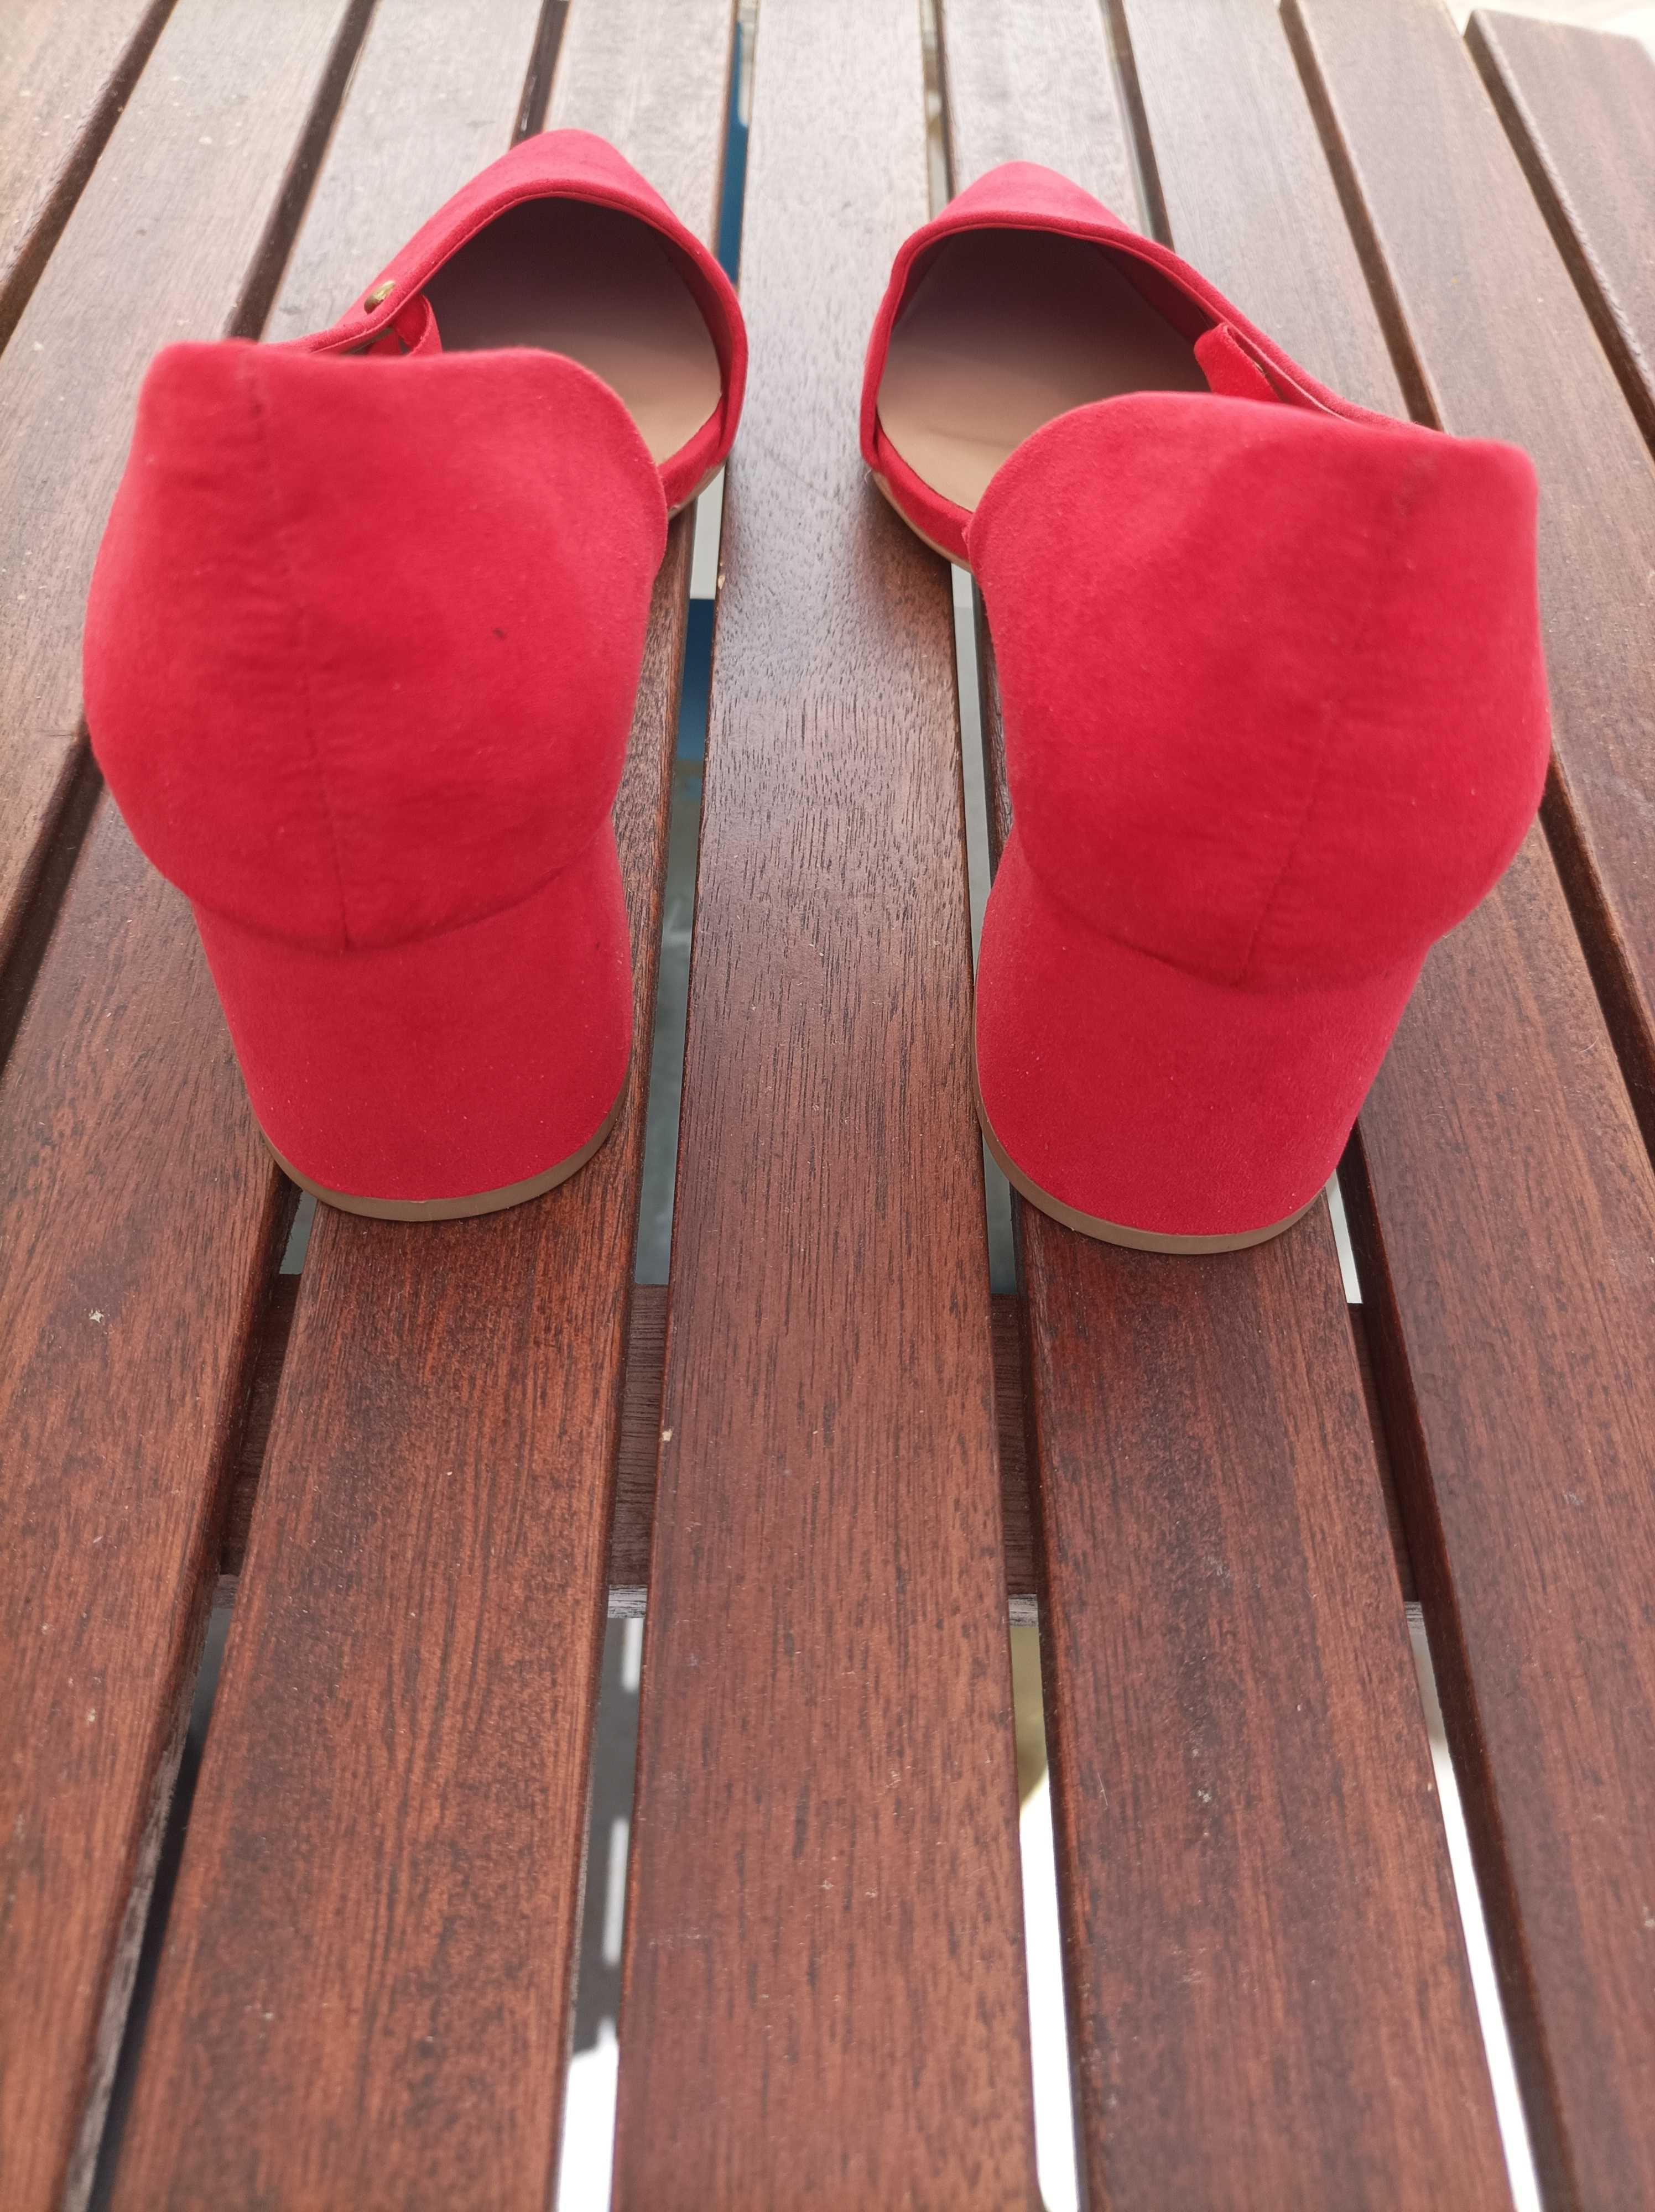 Sapatos camurça vermelhos novos.